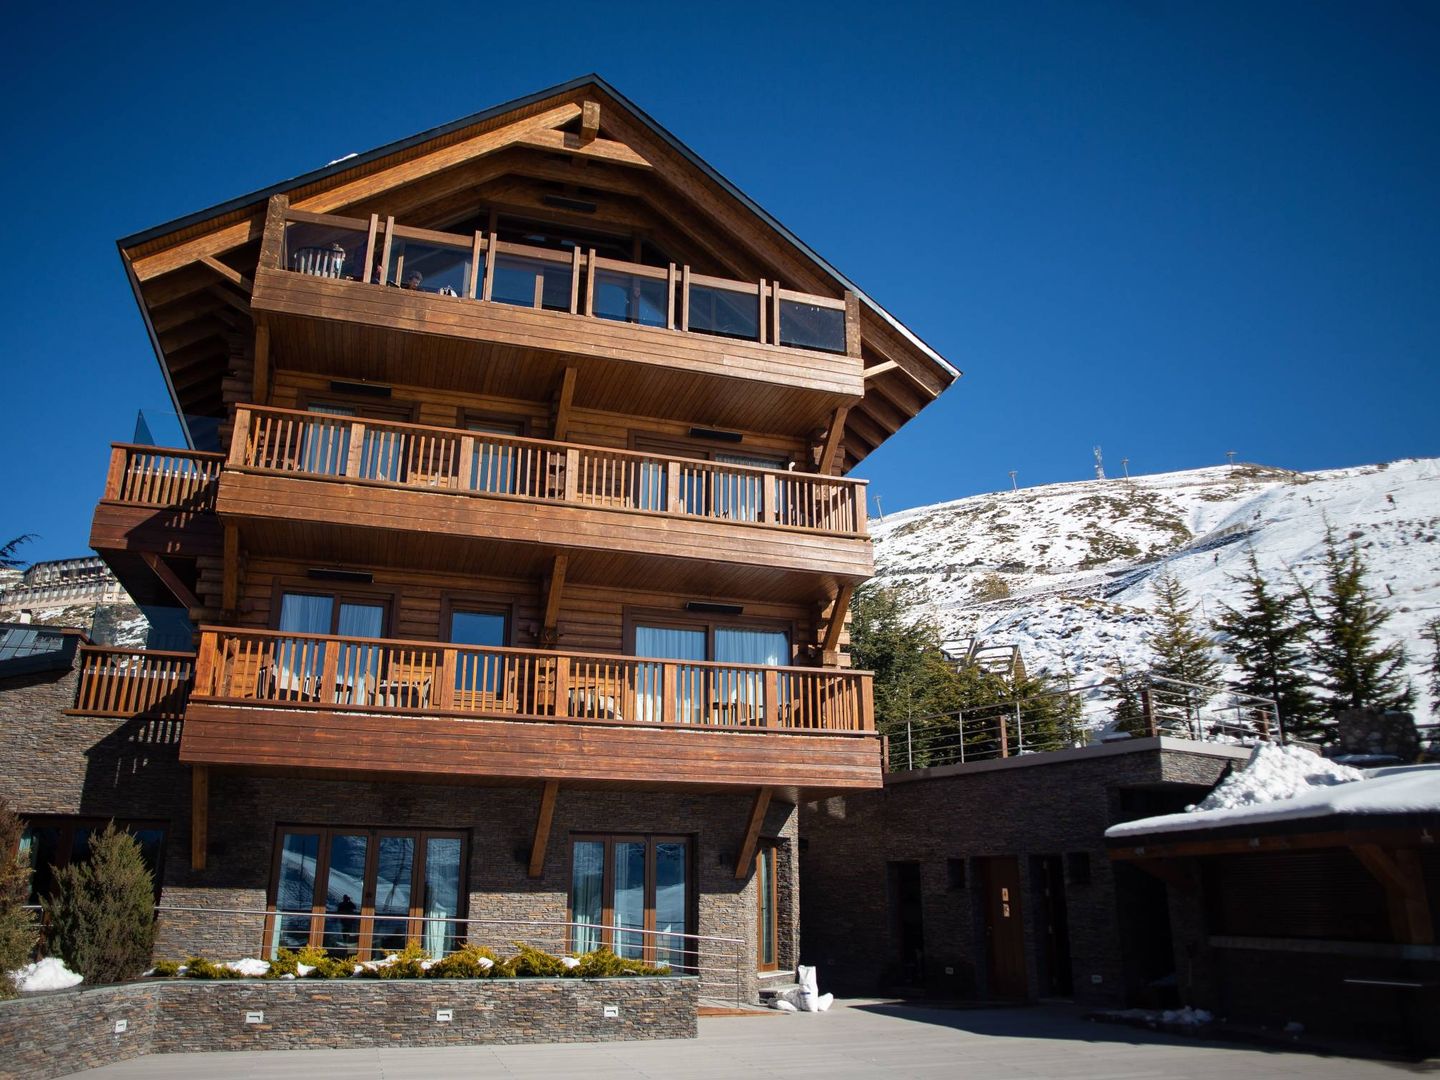 Hotel El Lodge de Sierra Nevada.